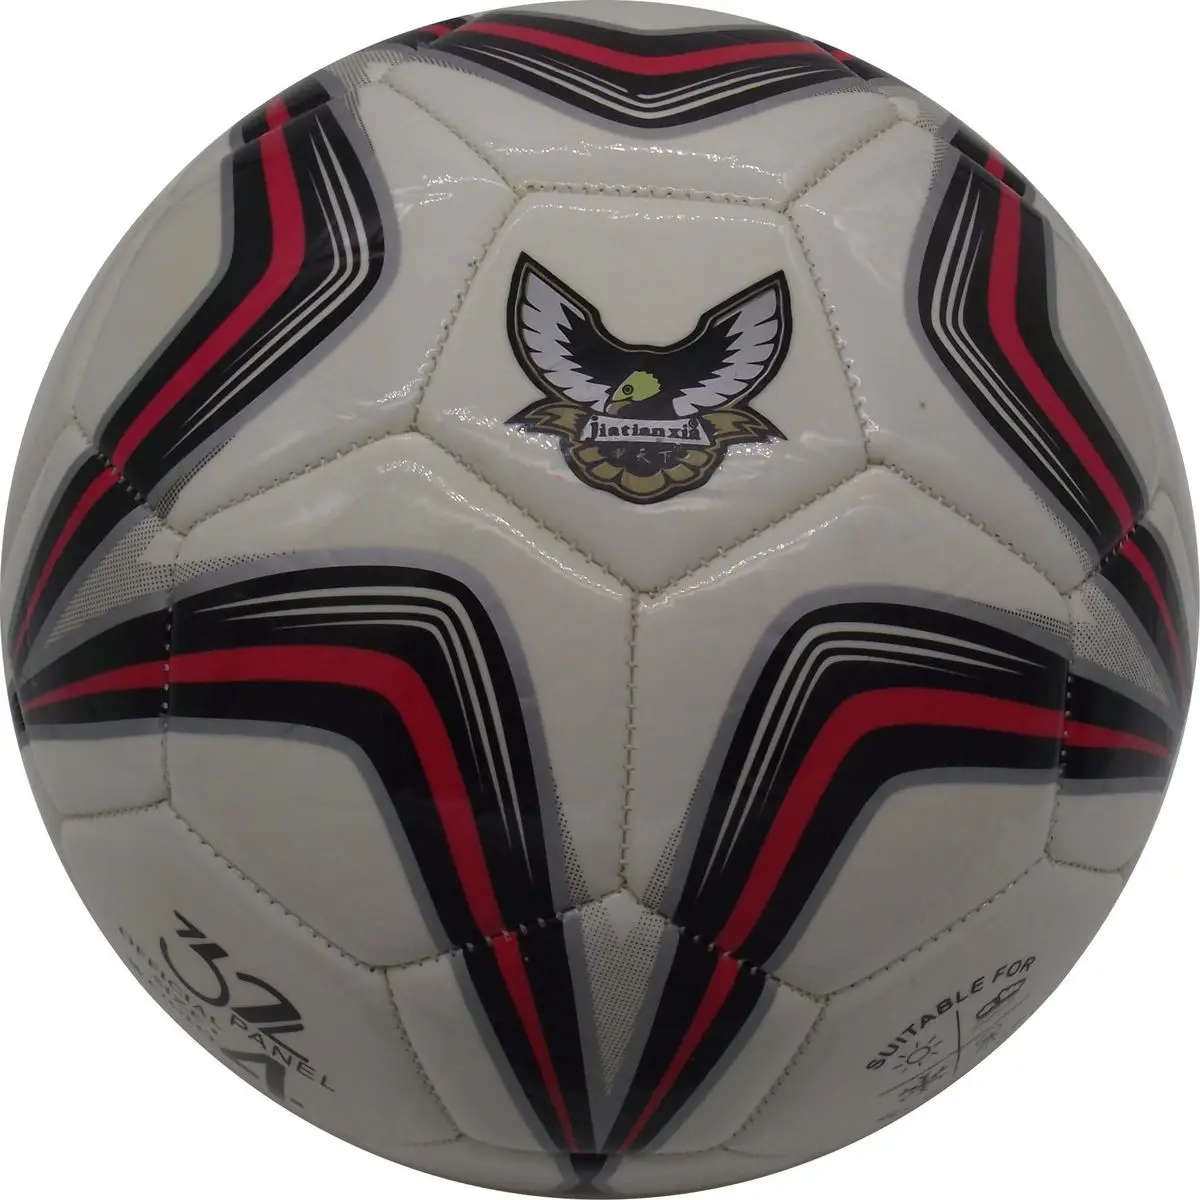 Размер 4 мячи для футбола для мужчин и женщин, высококачественные футбольные мячи для футбола topu boyutu 5 Z071OLC